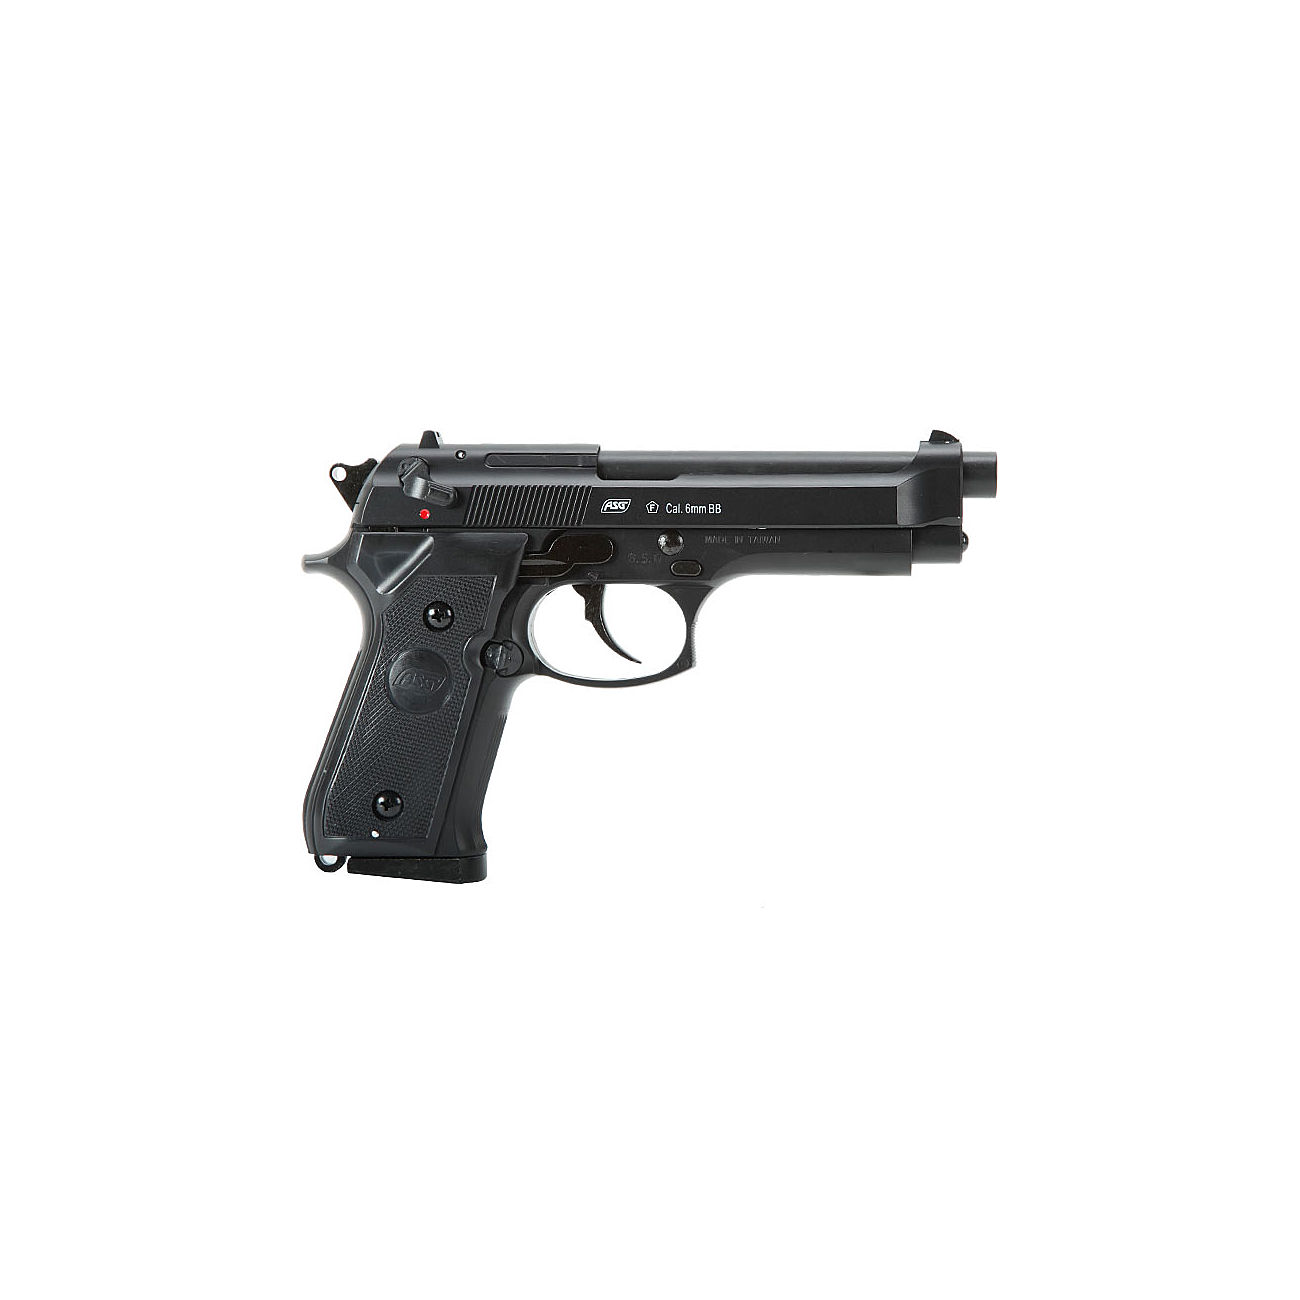 Pistolet ASG M92F à gaz calibre 6 mm BB airsoft